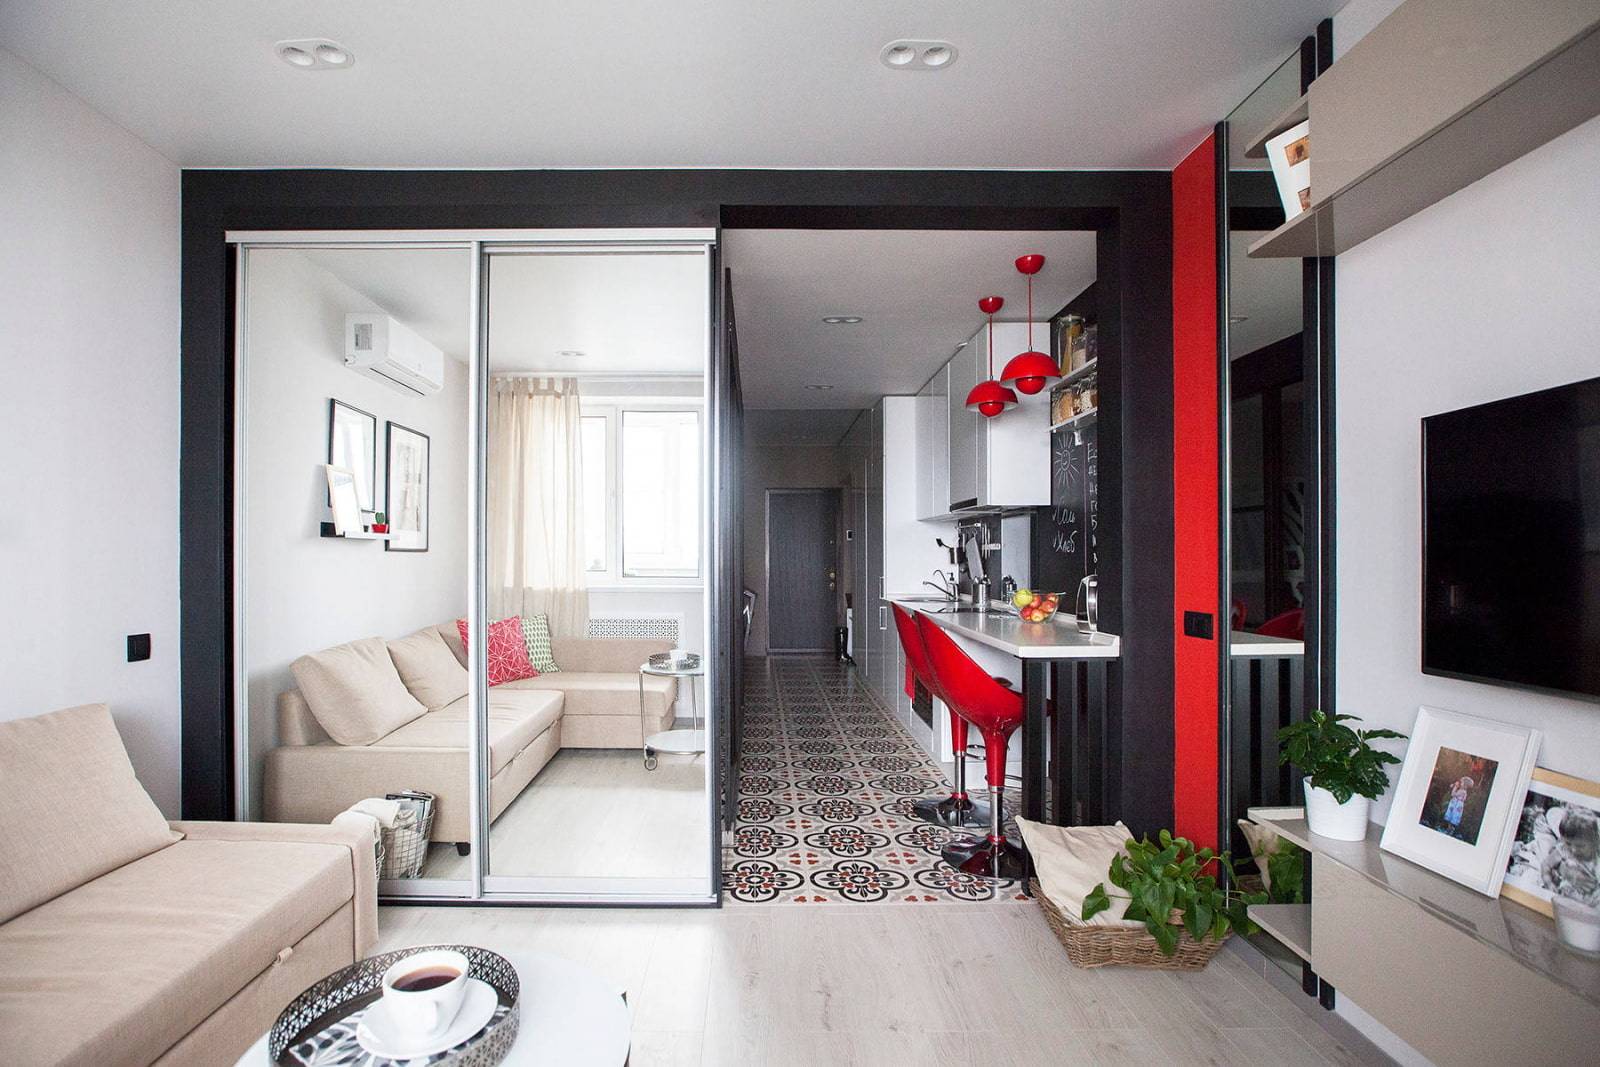 Дизайн интерьера однокомнатной квартиры, фото. как оформить красиво